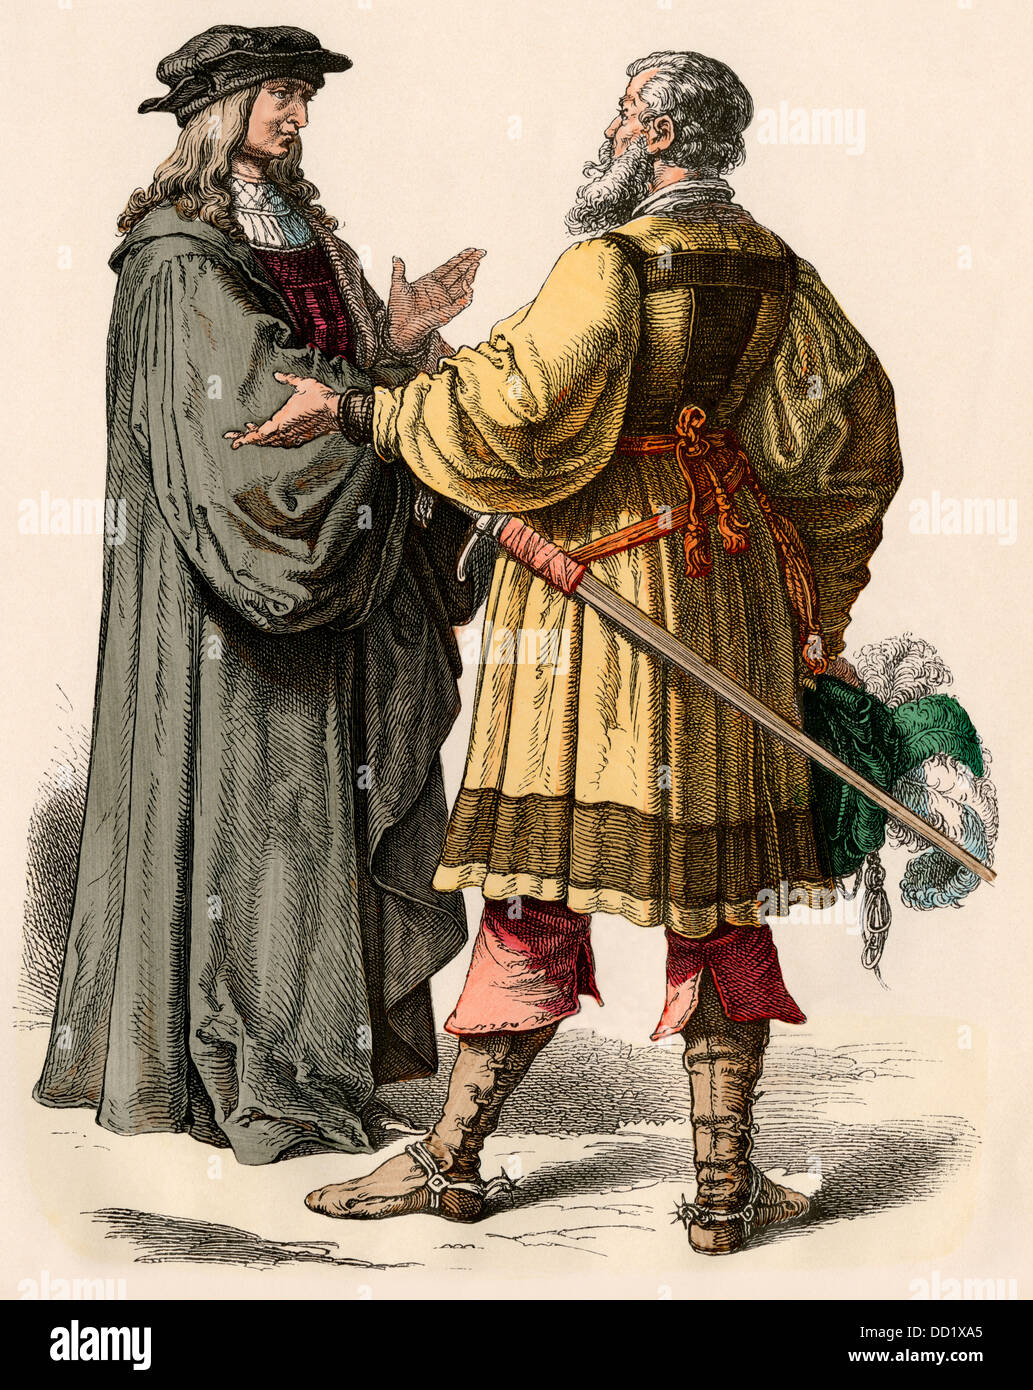 Magistrat allemand et un chevalier en conversation, début des années 1500. Impression couleur à la main Banque D'Images